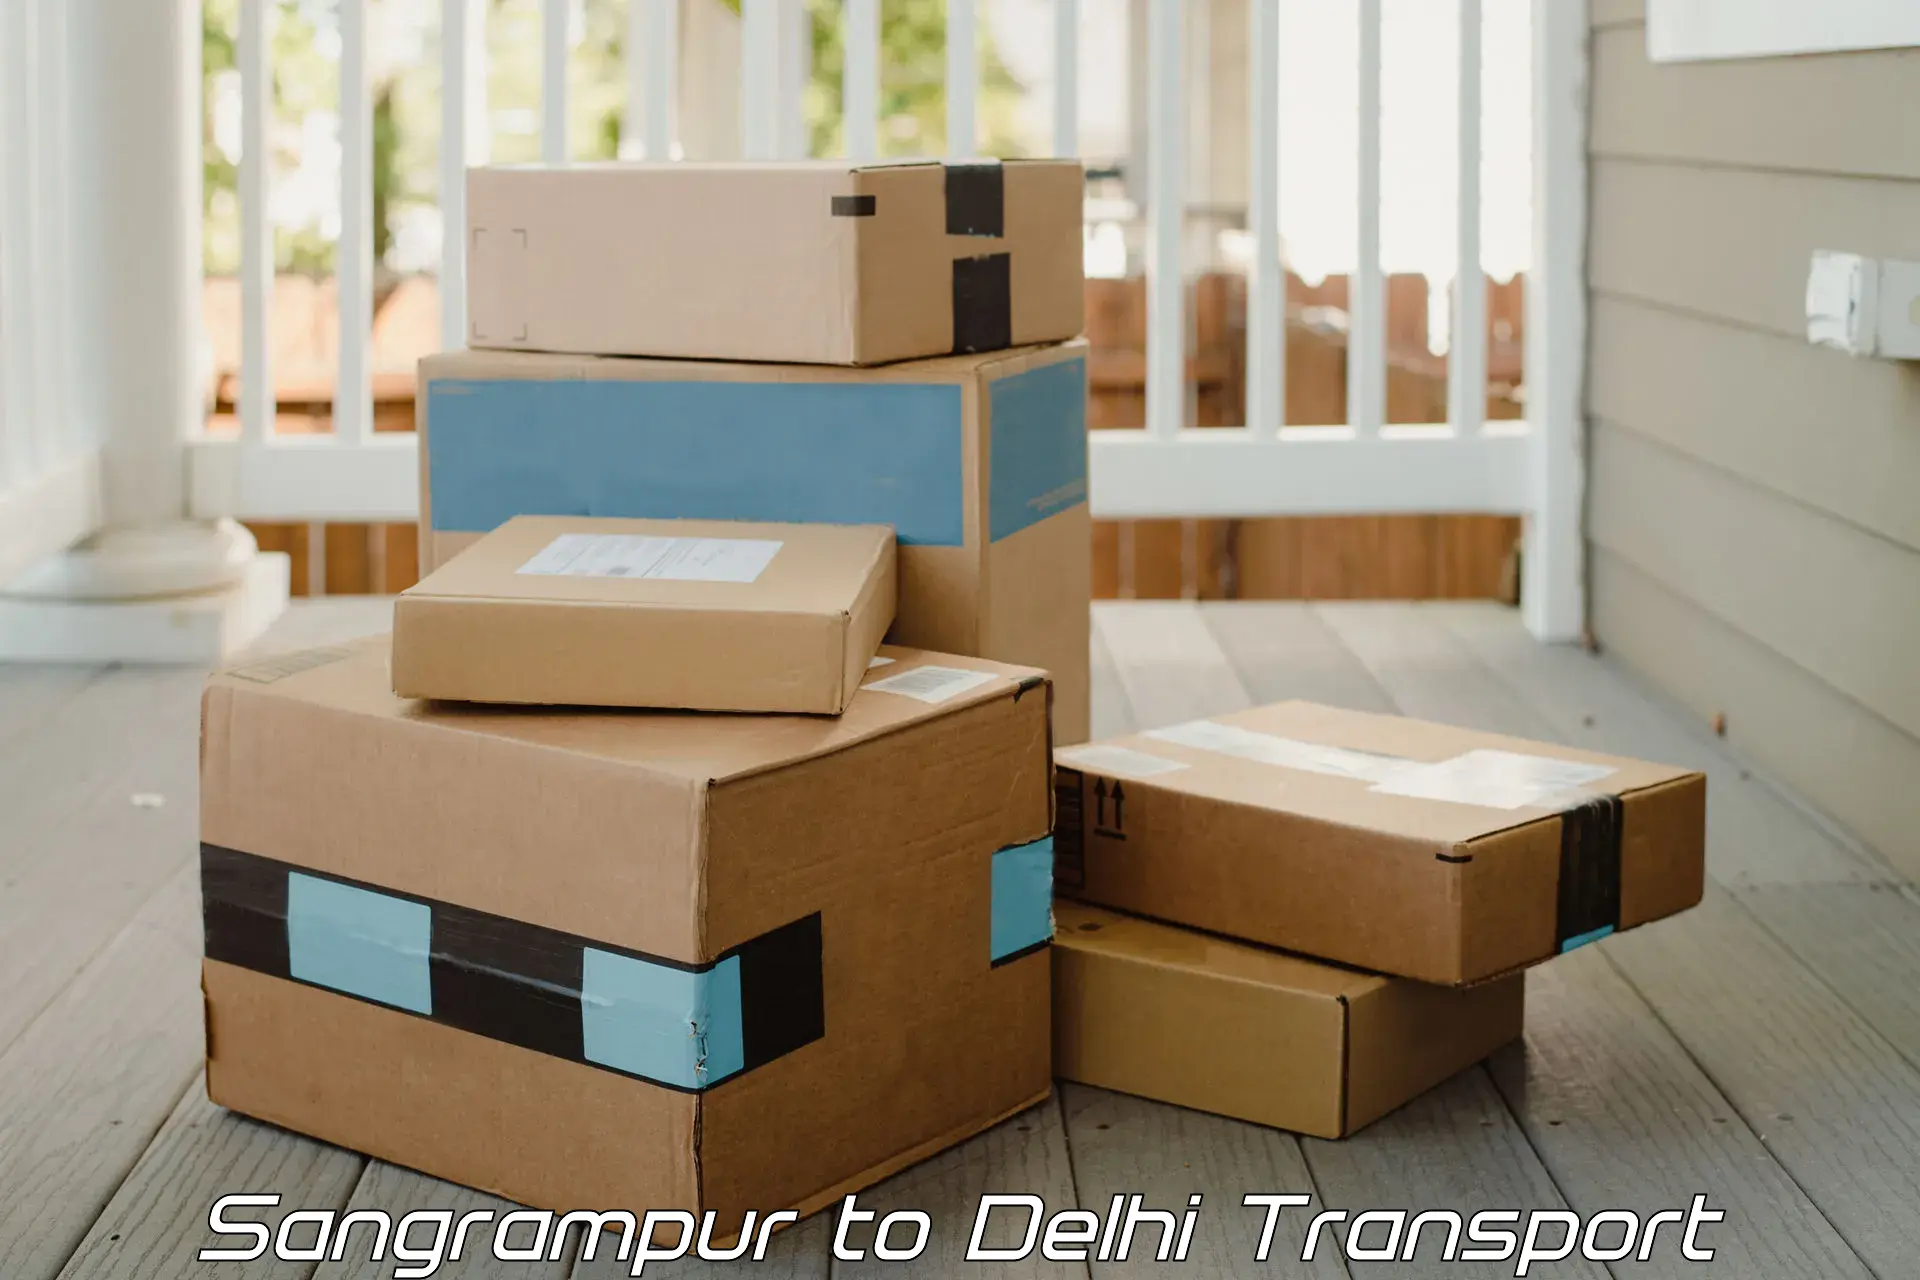 Two wheeler parcel service Sangrampur to Sarojini Nagar